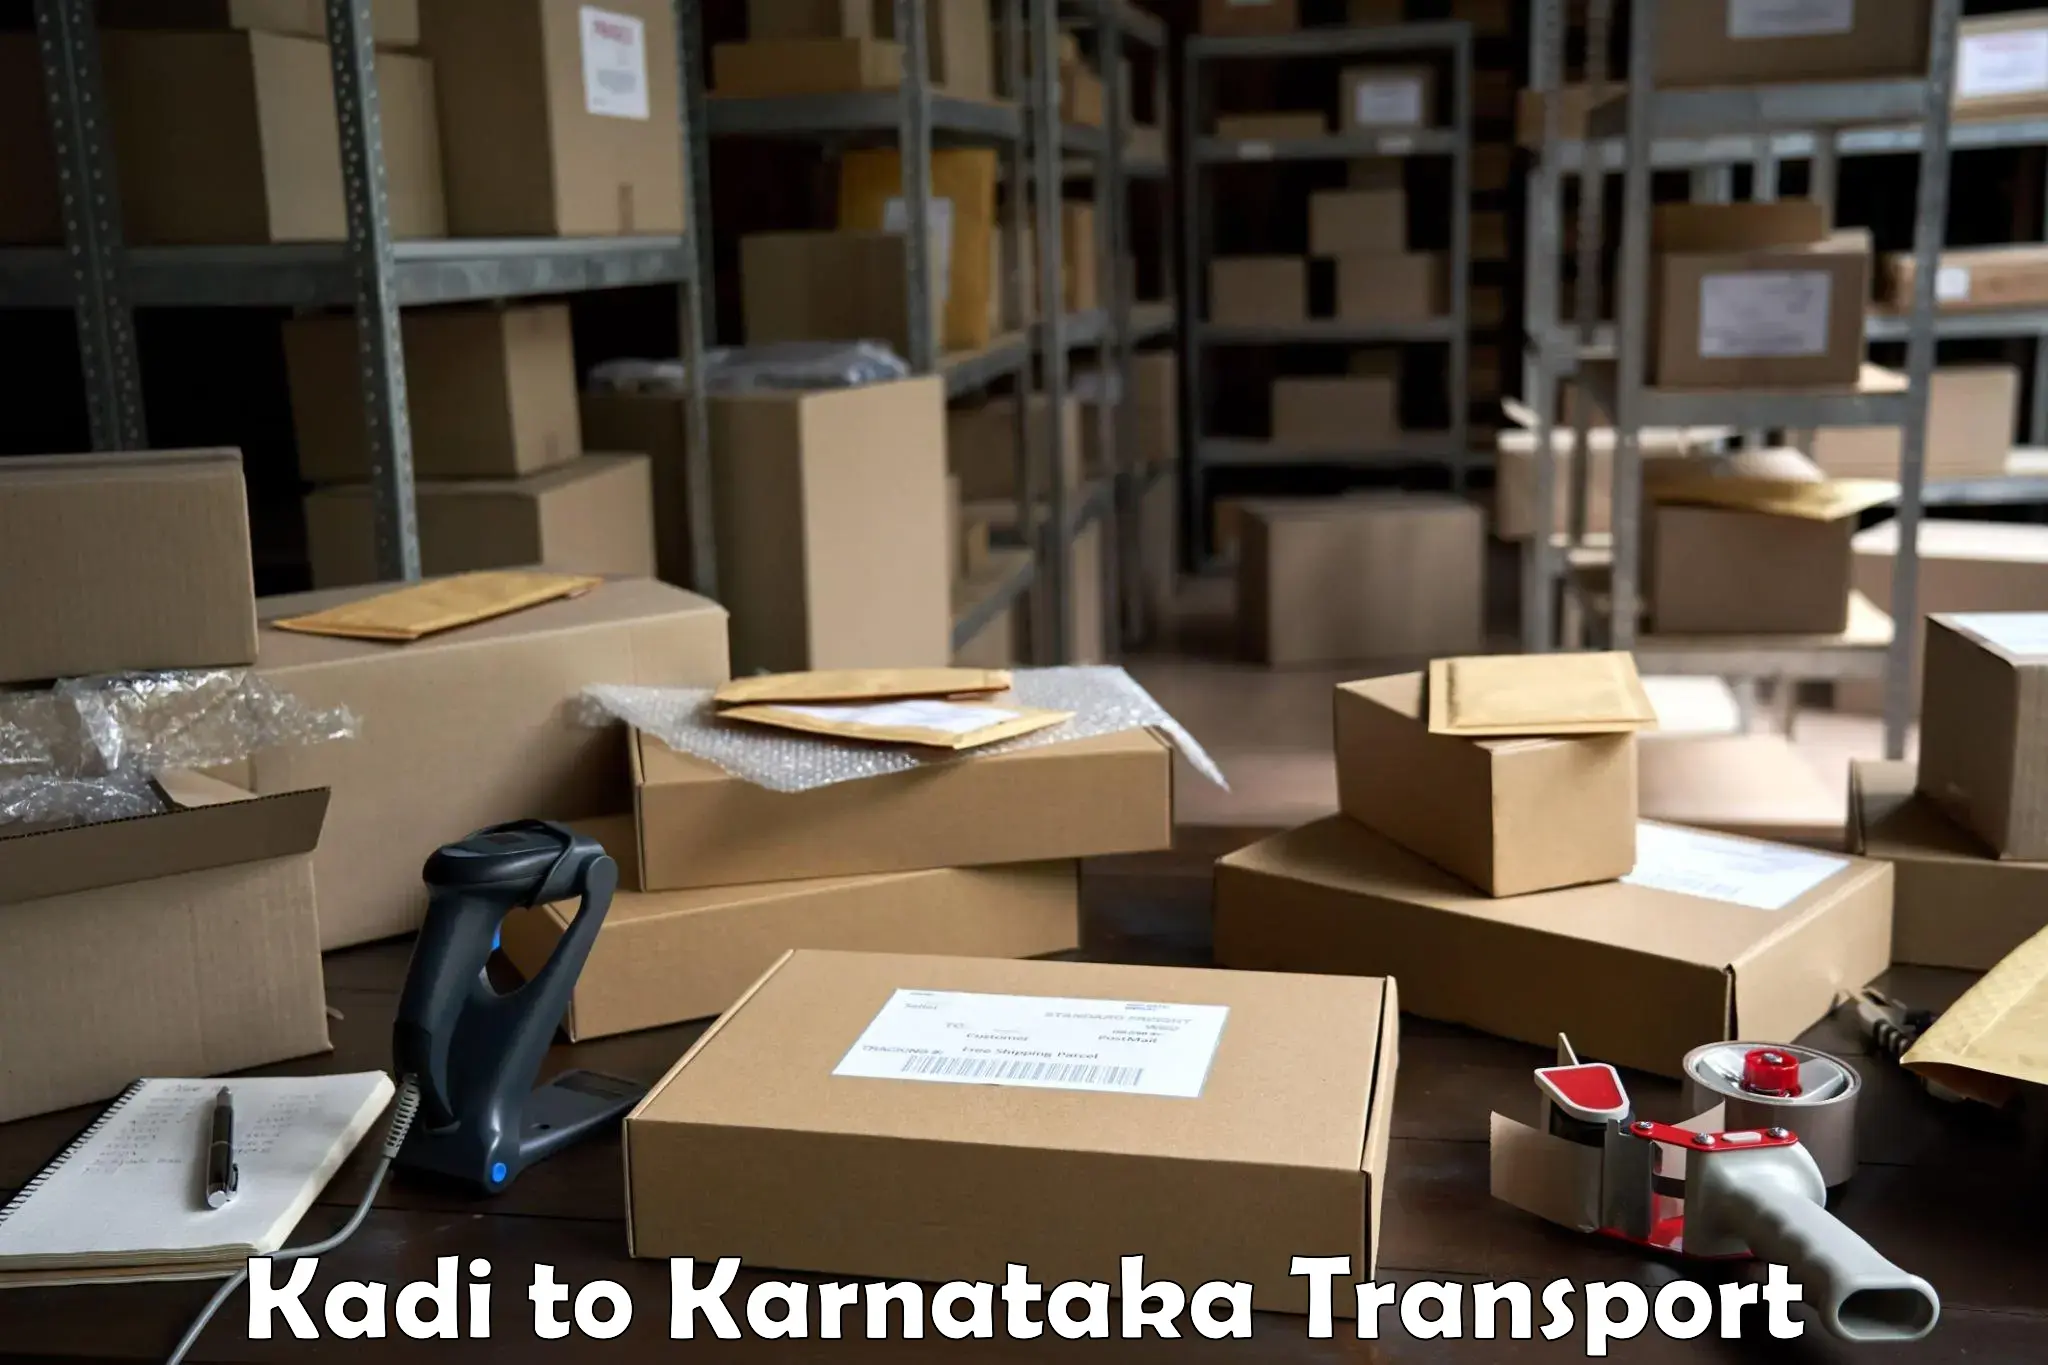 Two wheeler transport services Kadi to Kanjarakatte